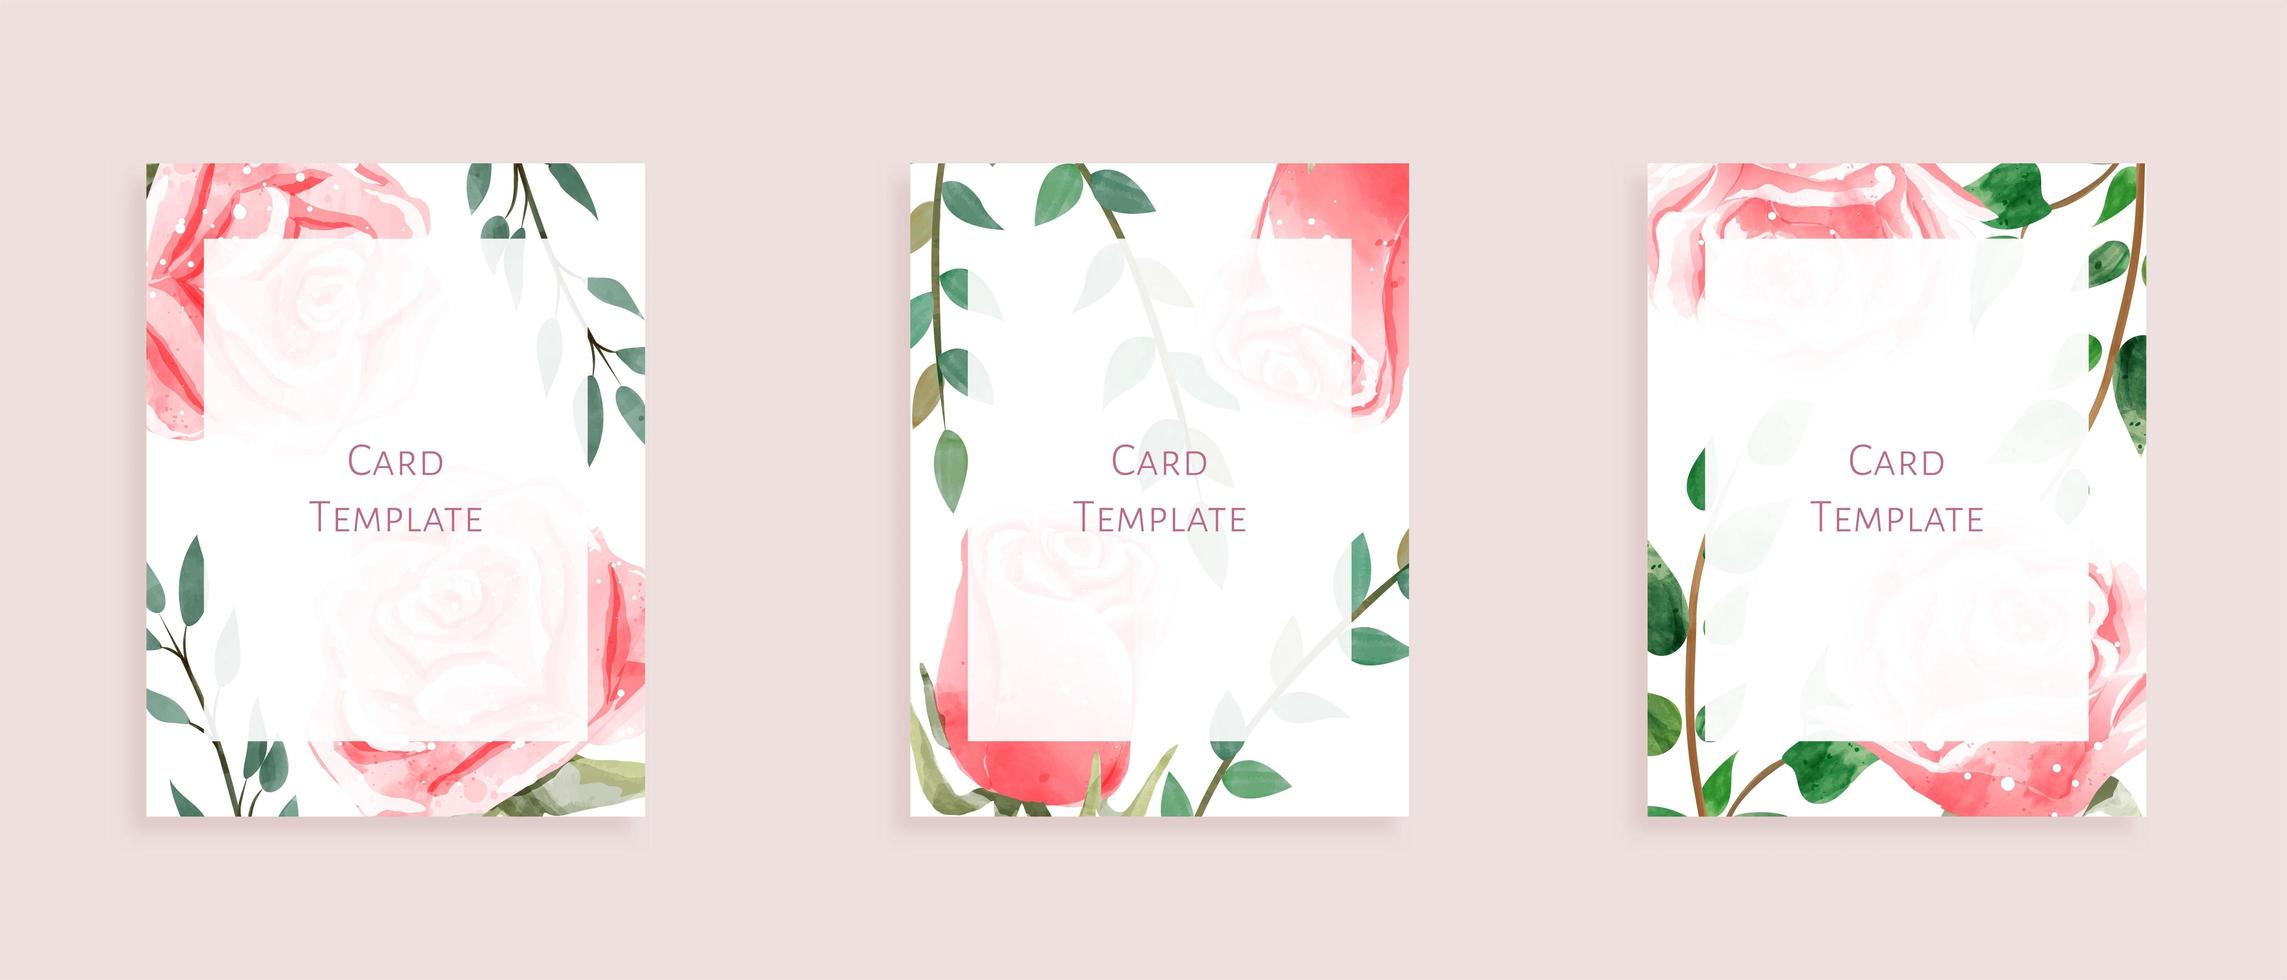 Conjunto de plantillas de tarjetas modernas con rosas y hojas silvestres vector